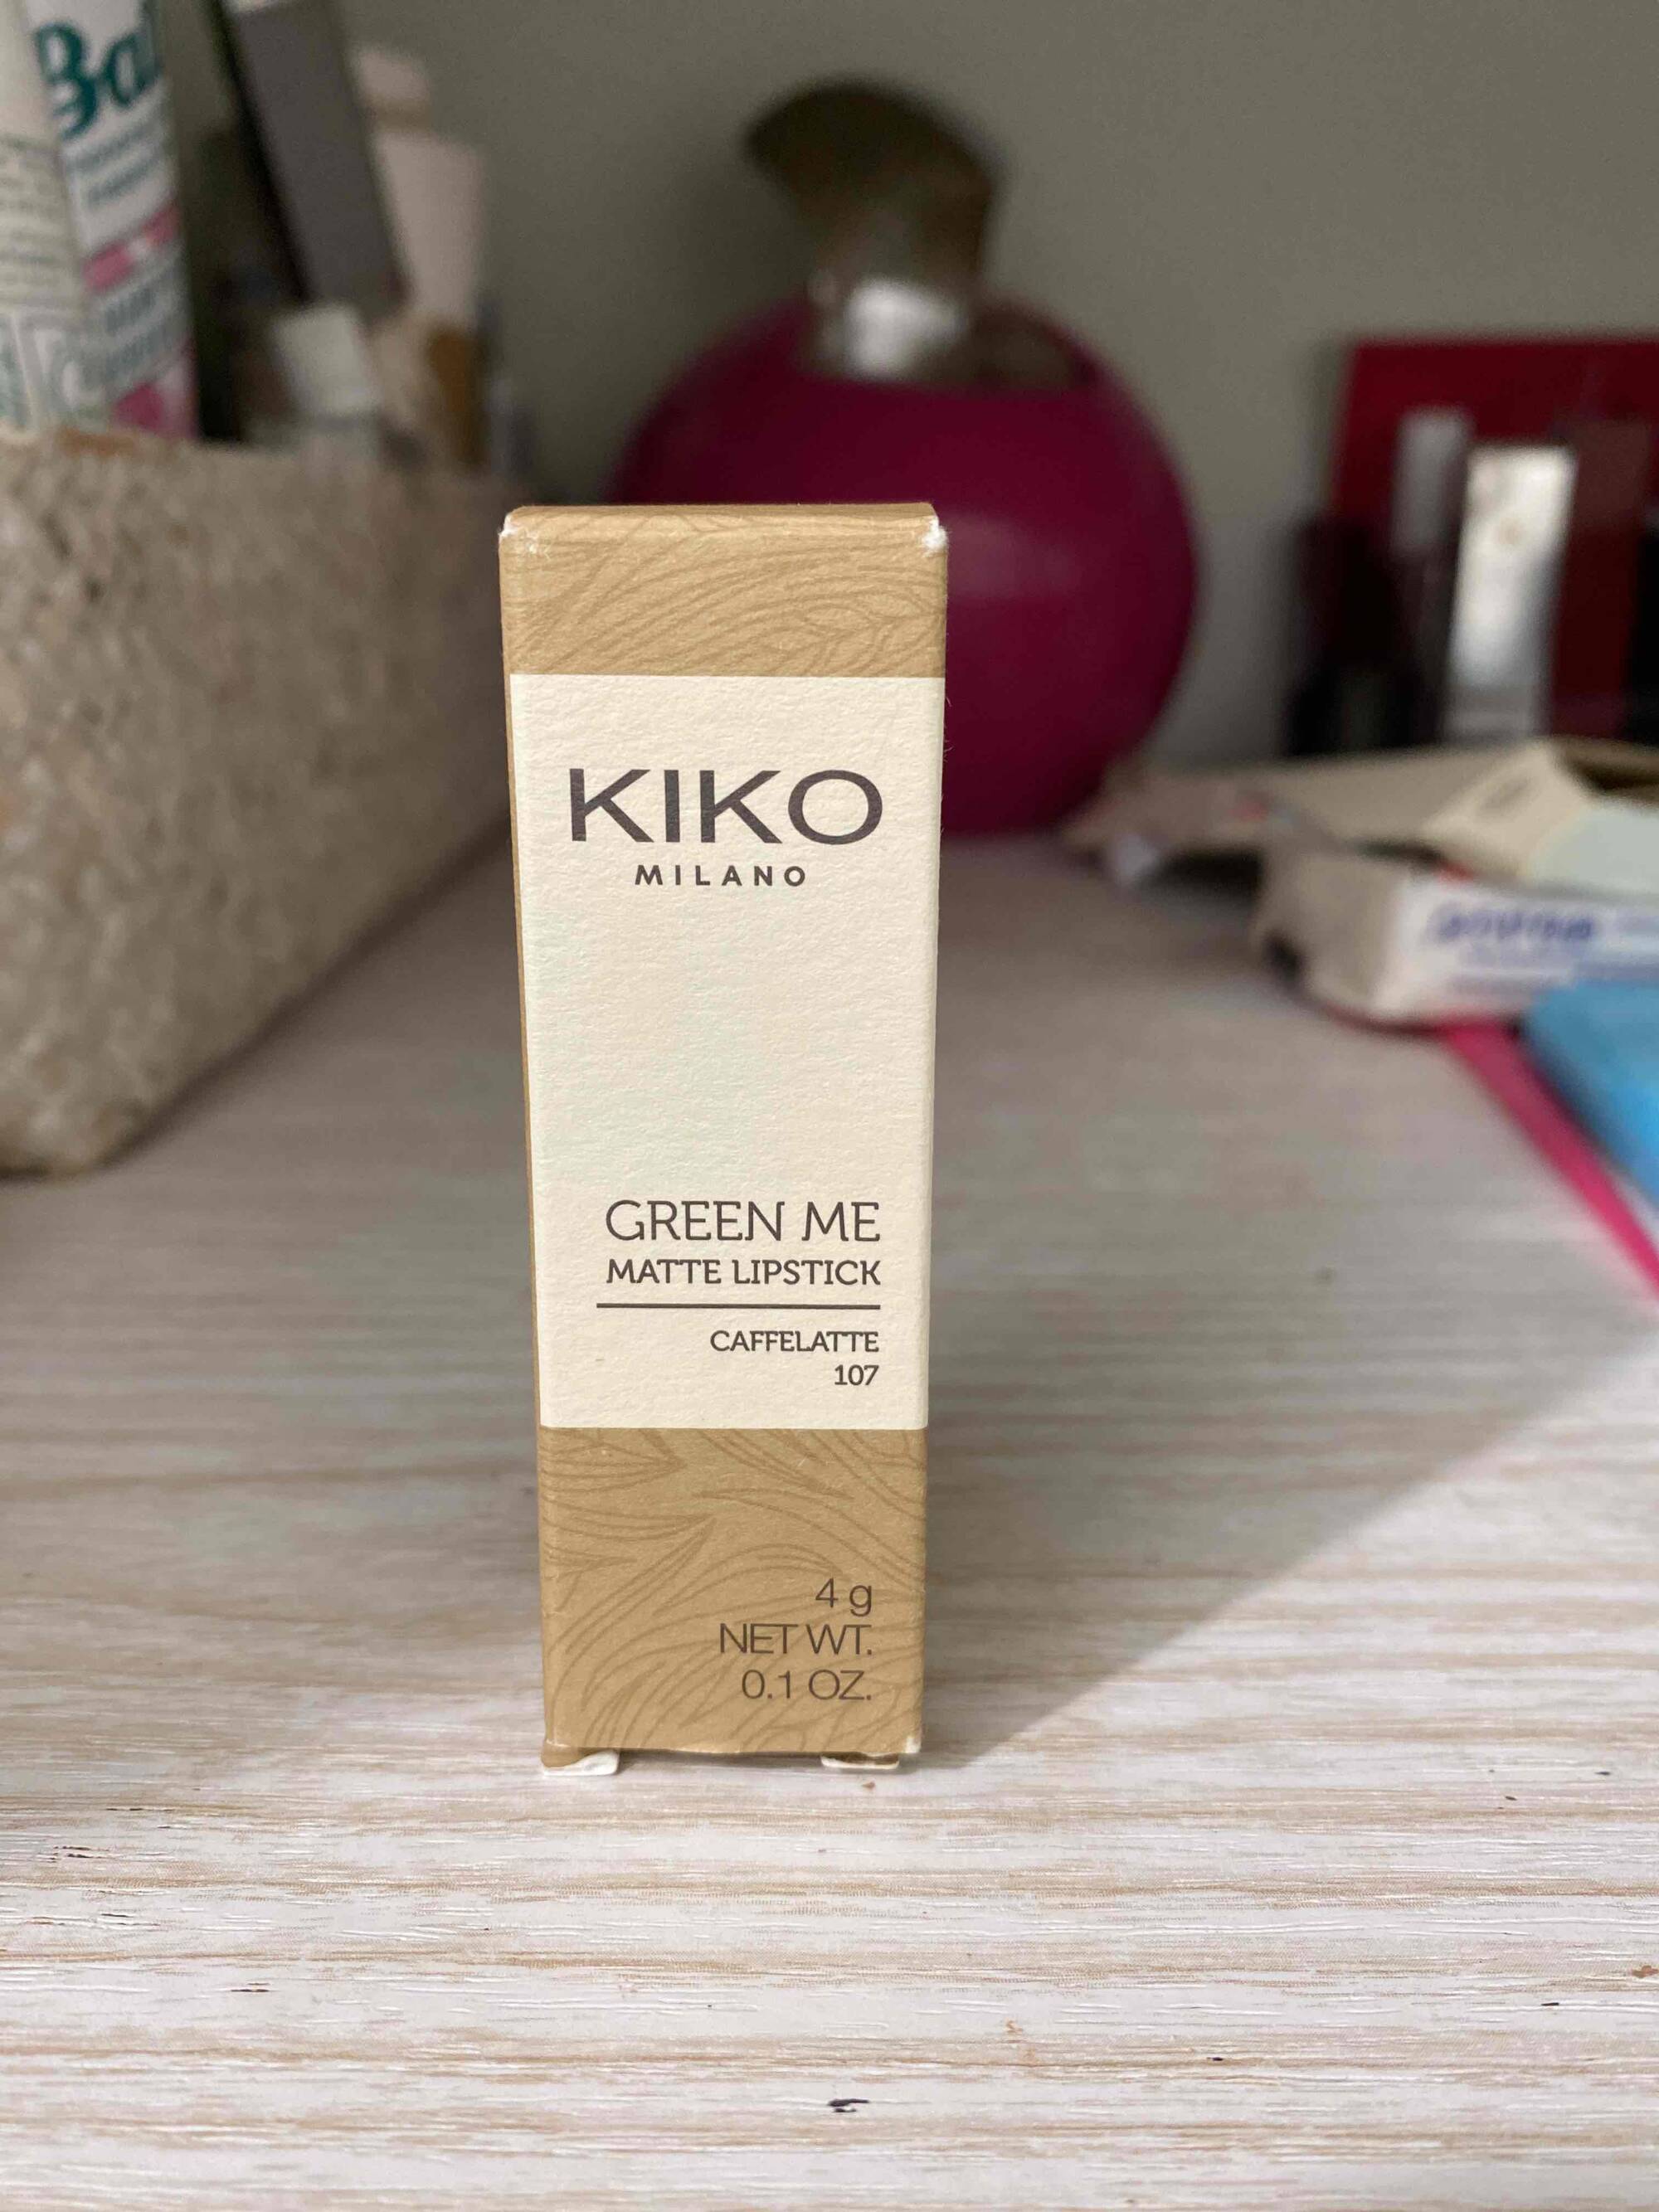 KIKO - Green me - Matte lipstick